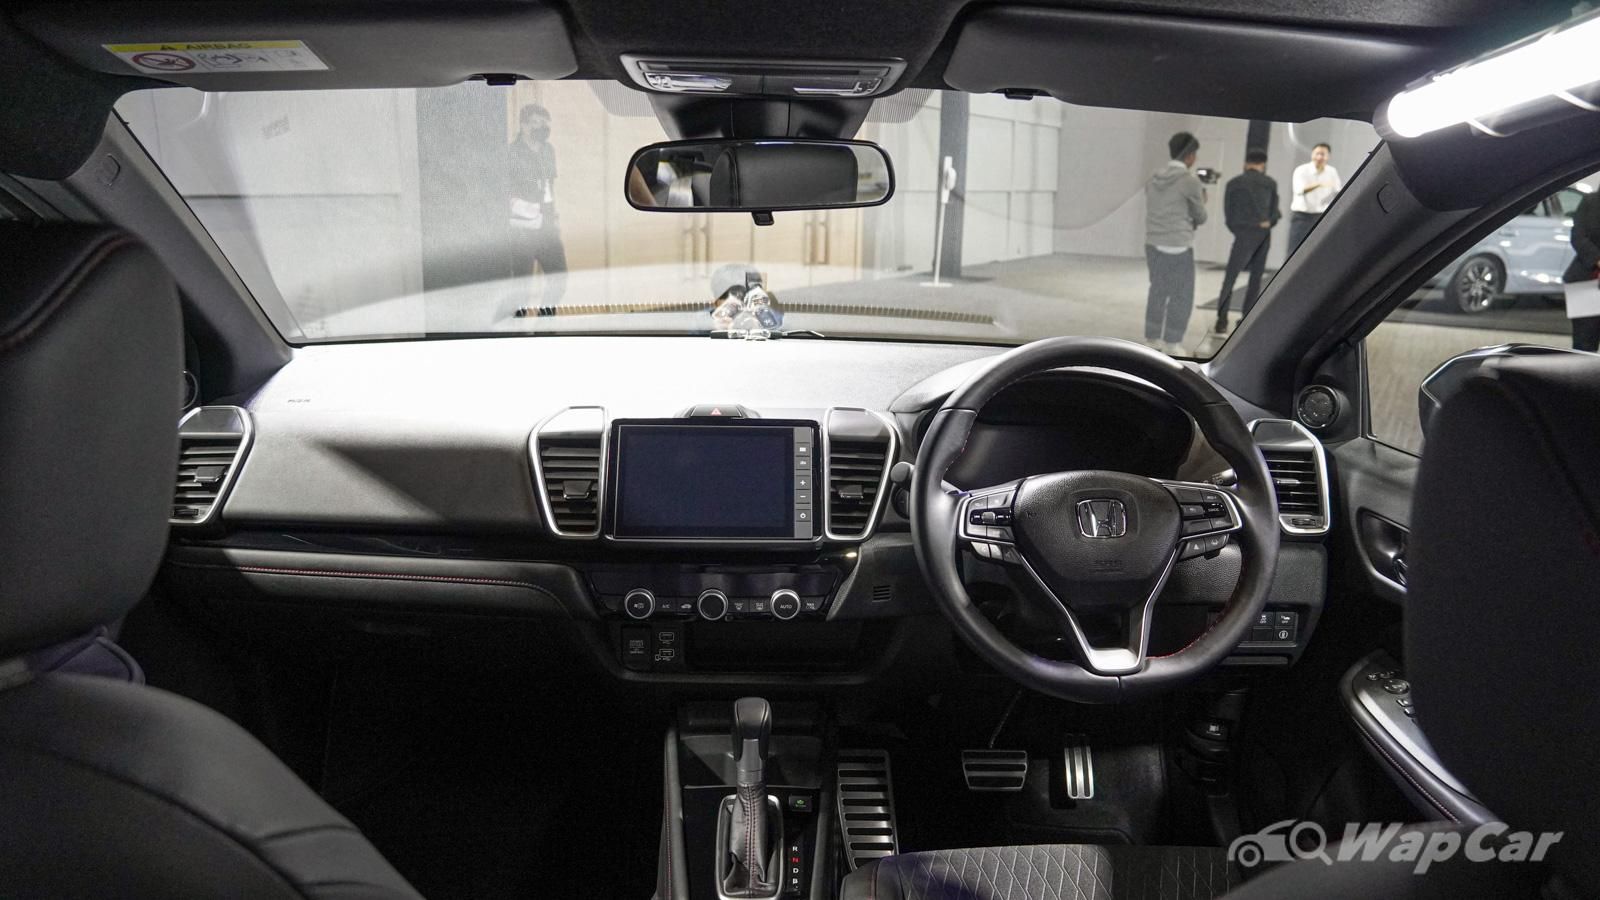 2021 Honda City International Version Interior 001